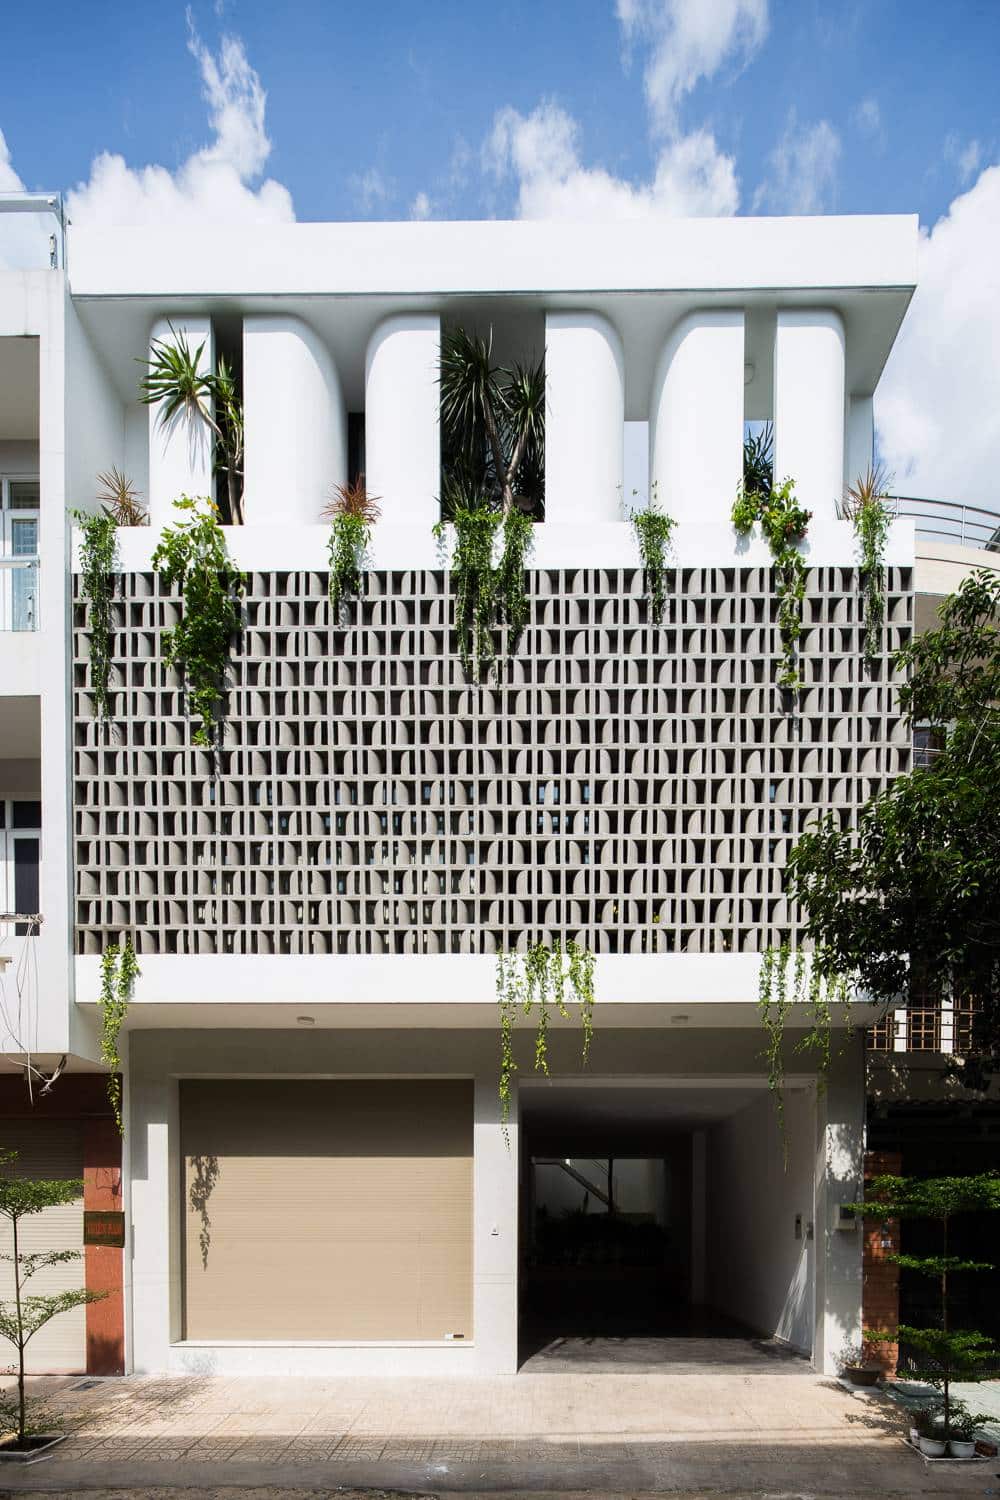 Ngôi nhà sở hữu thiết kế “độc nhất vô nhị” nằm giữa lòng Sài Gòn hoa lệ